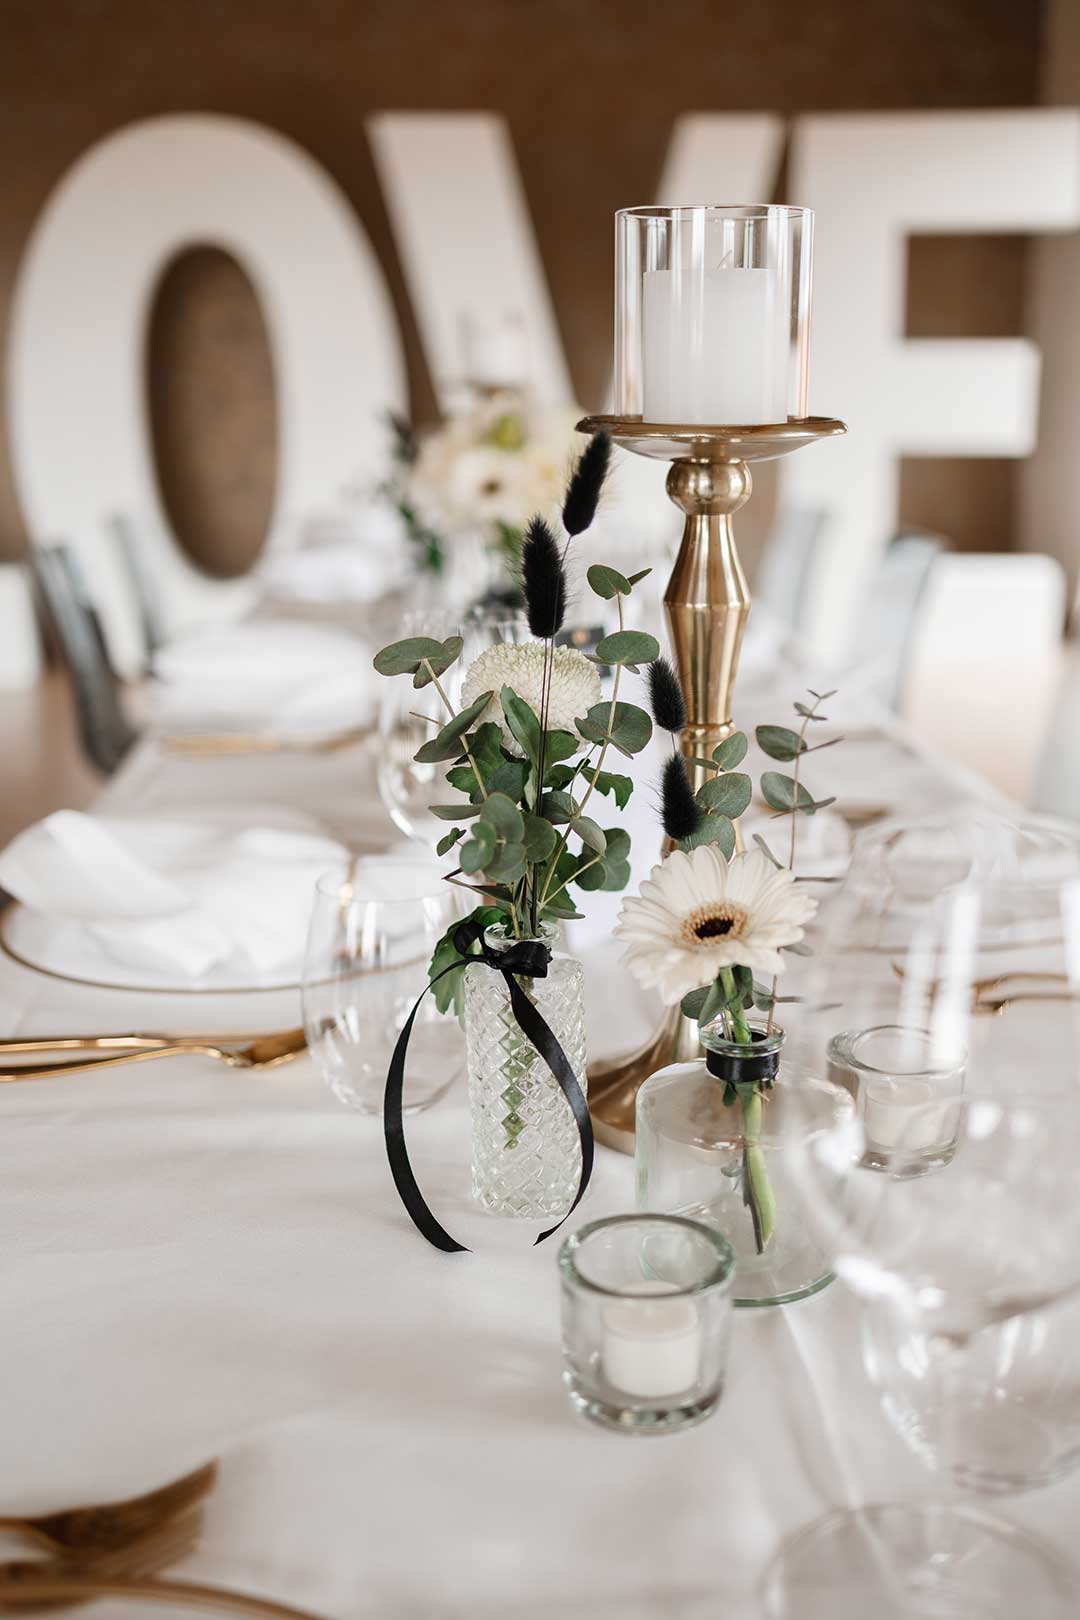 Tischdeko bei der Hochzeit in Schwarz Weiß